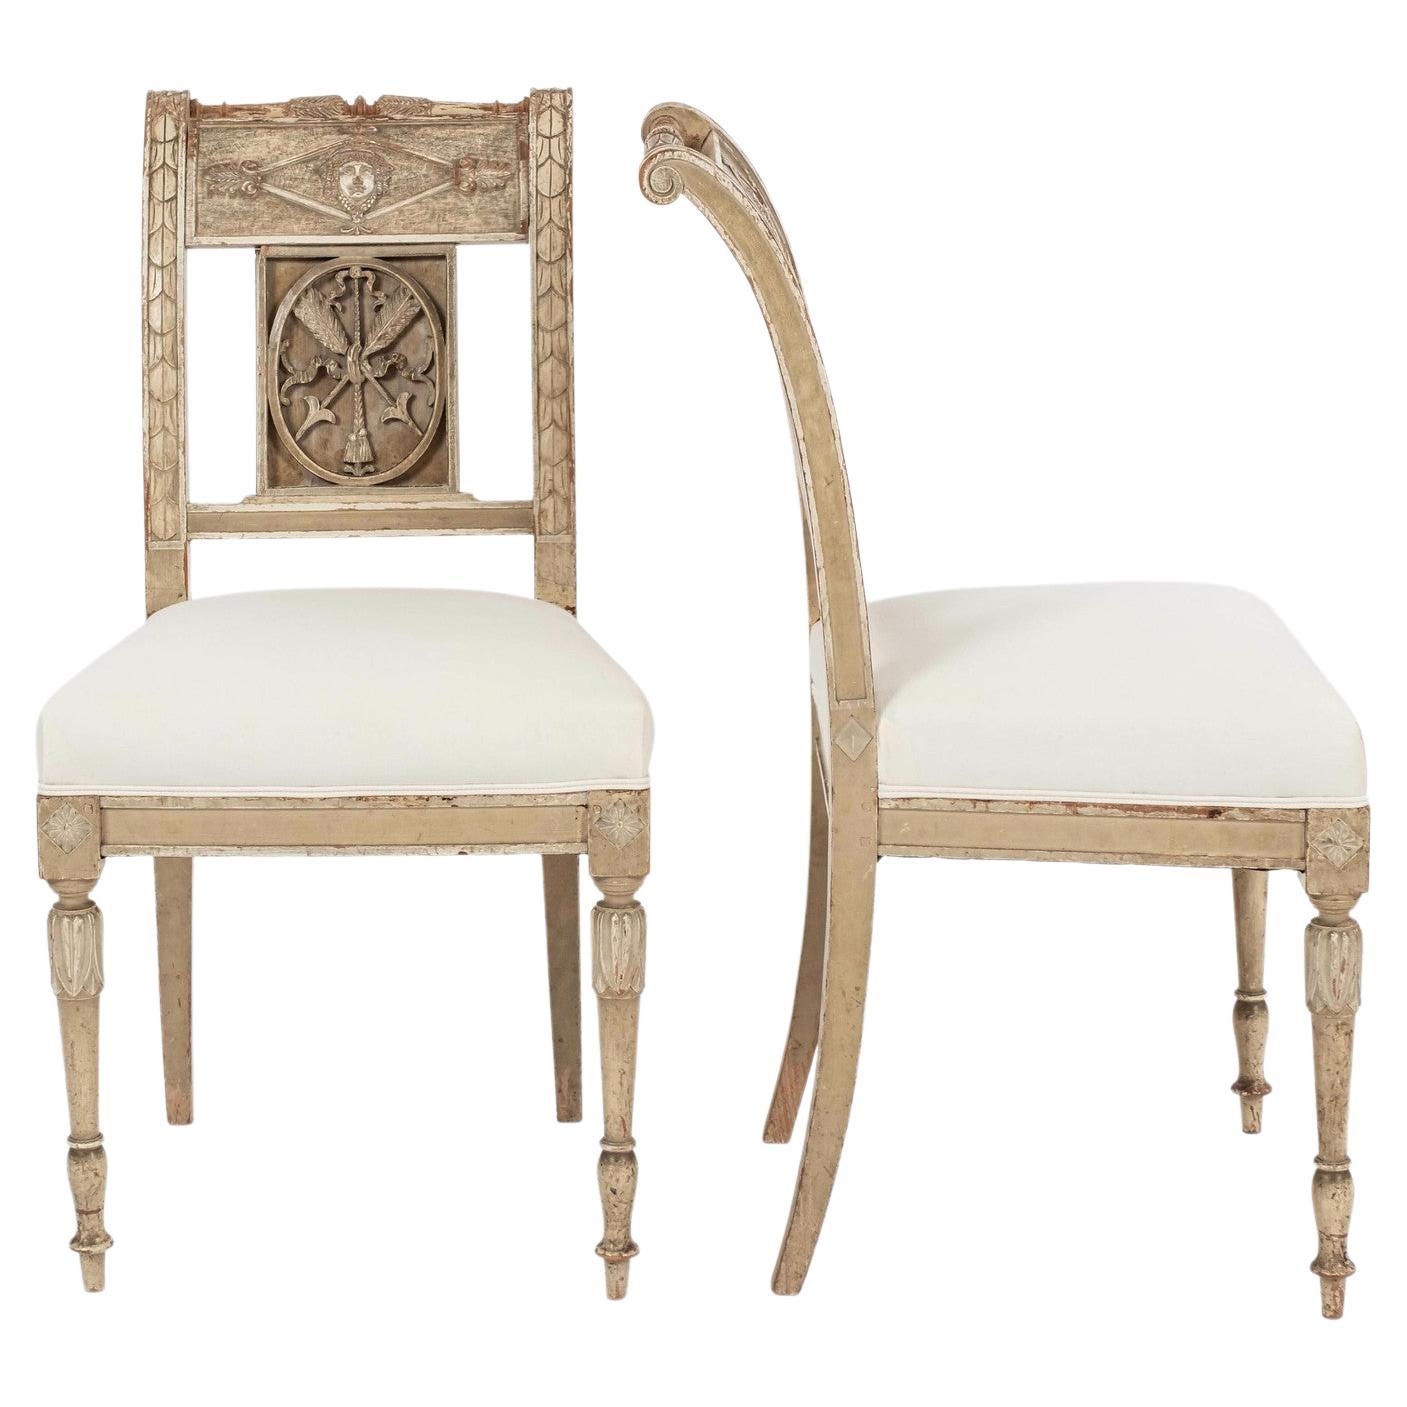 Paar neoklassizistische gustavianische Stühle aus dem 18. Jahrhundert